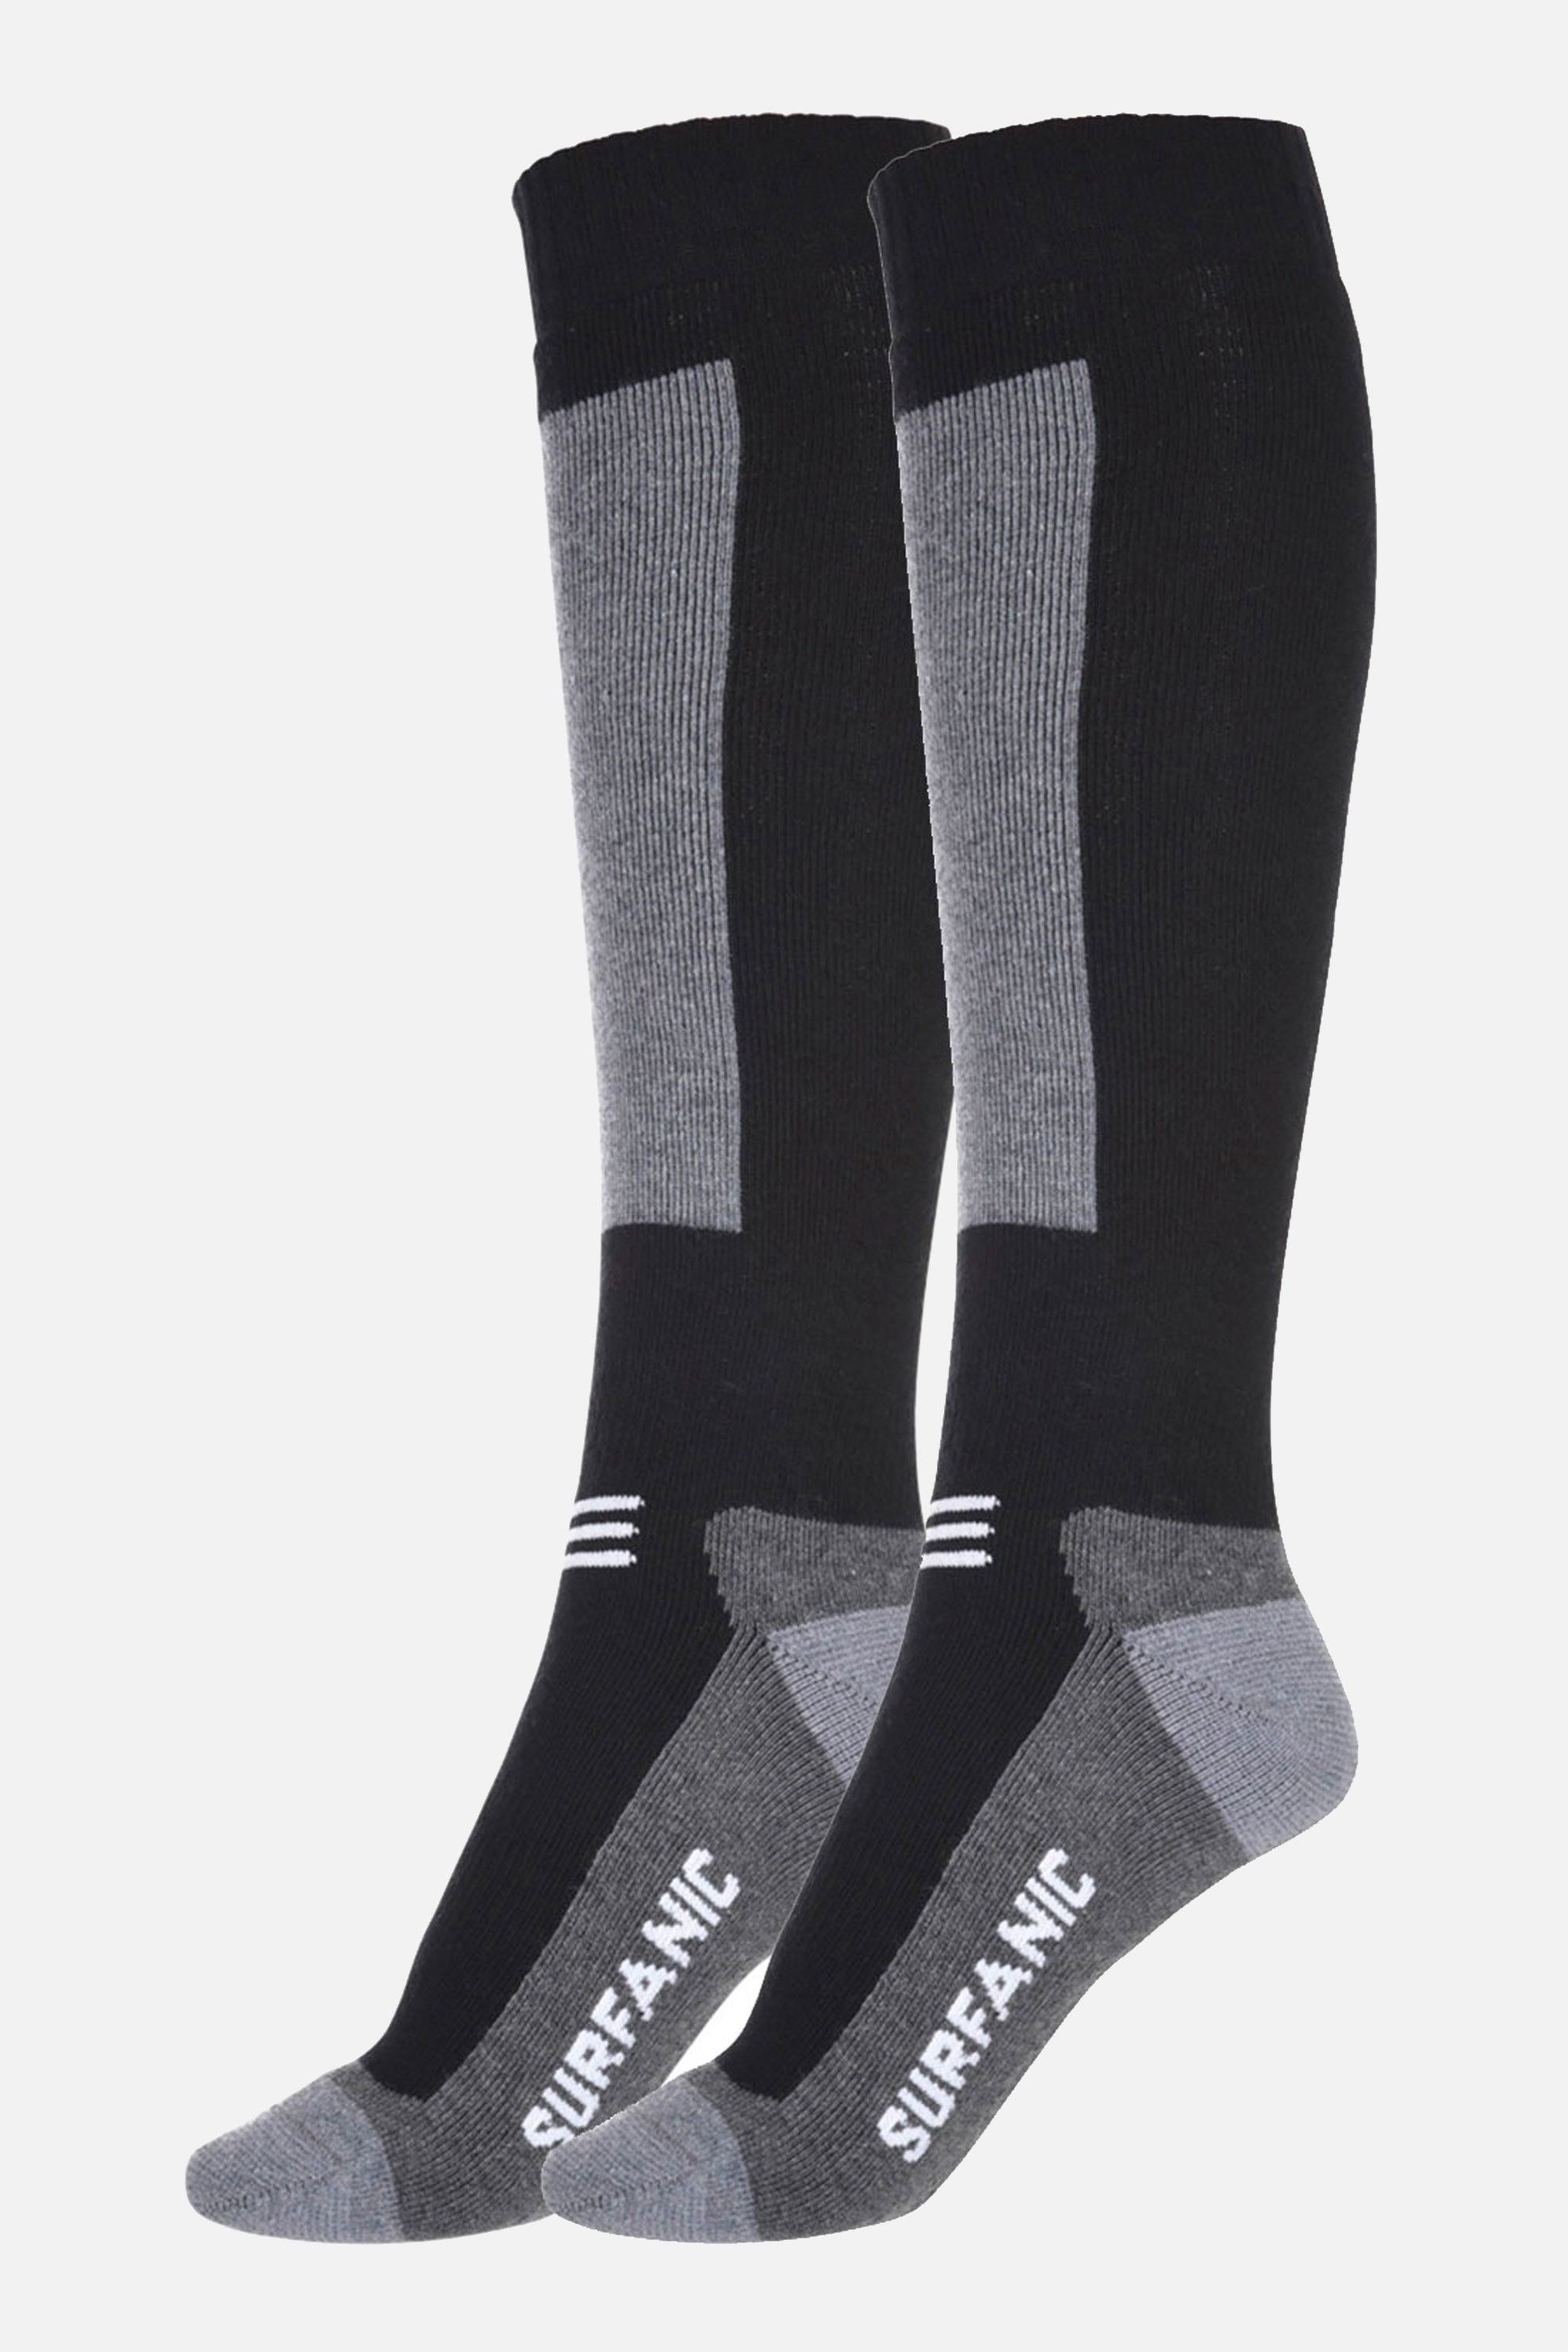 Endurance Merino Socks 2-Pack -